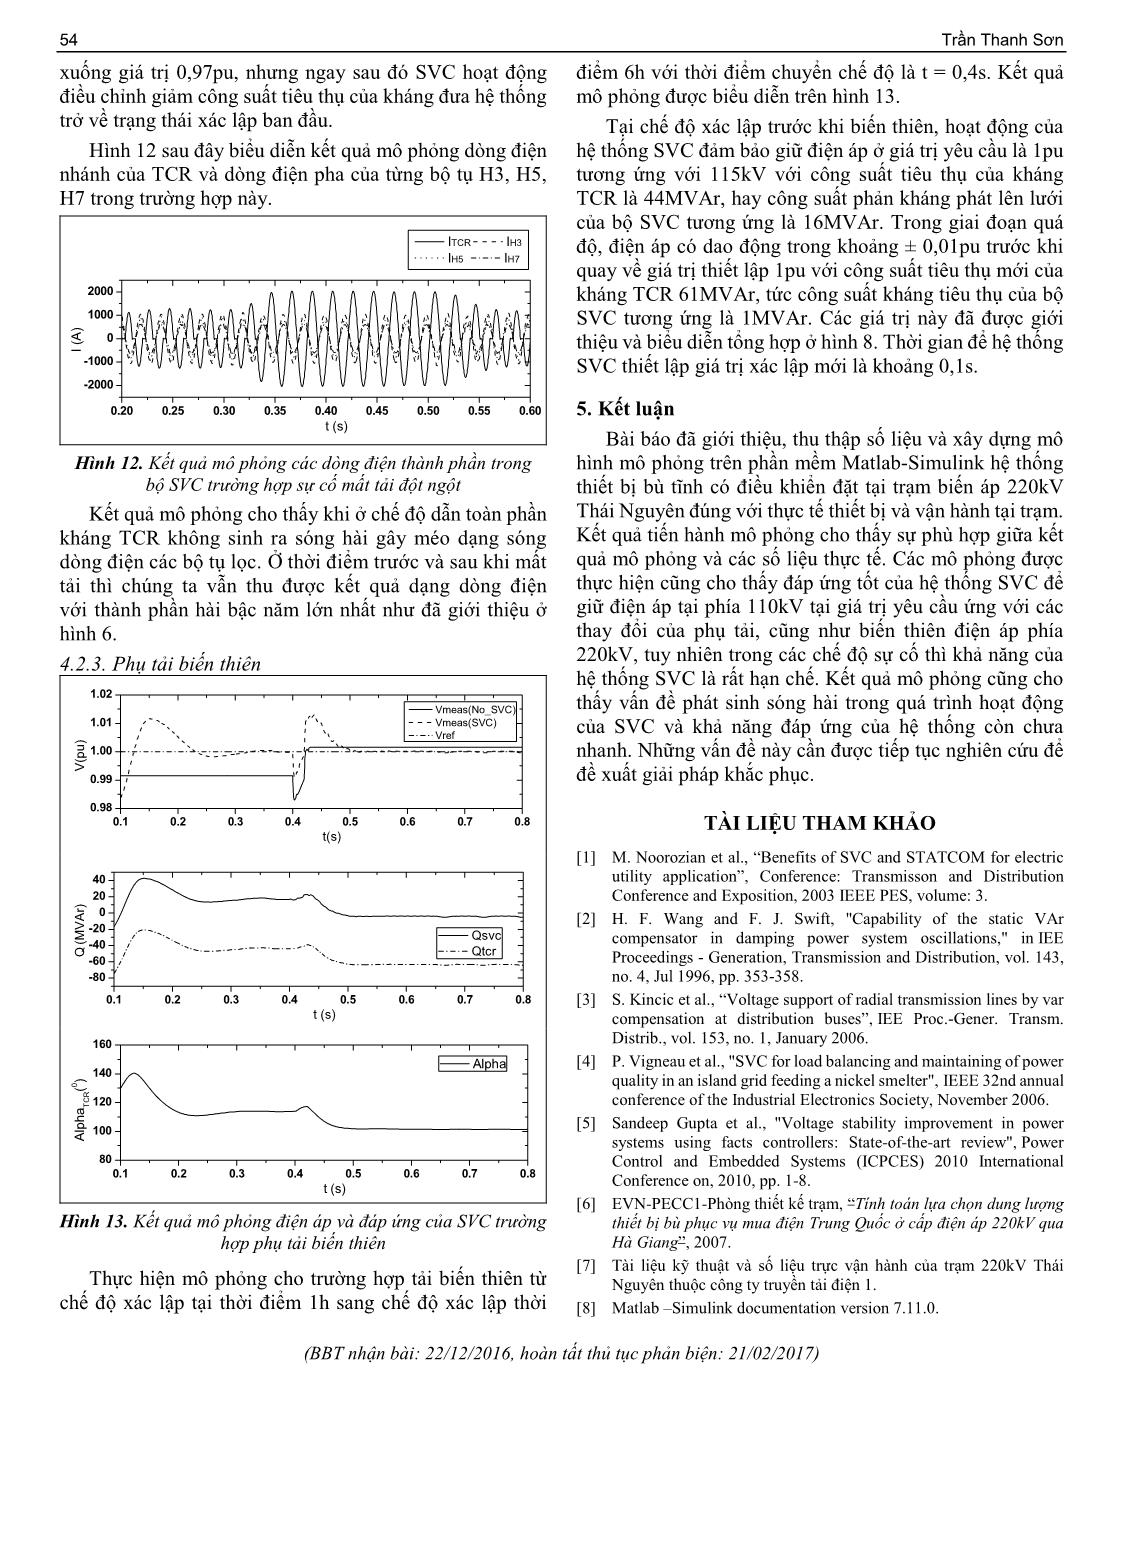 Đánh giá khả năng giữ ổn định điện áp của hệ thống bù tĩnh tại trạm 220 Kv Thái Nguyên bằng Simulink trang 5